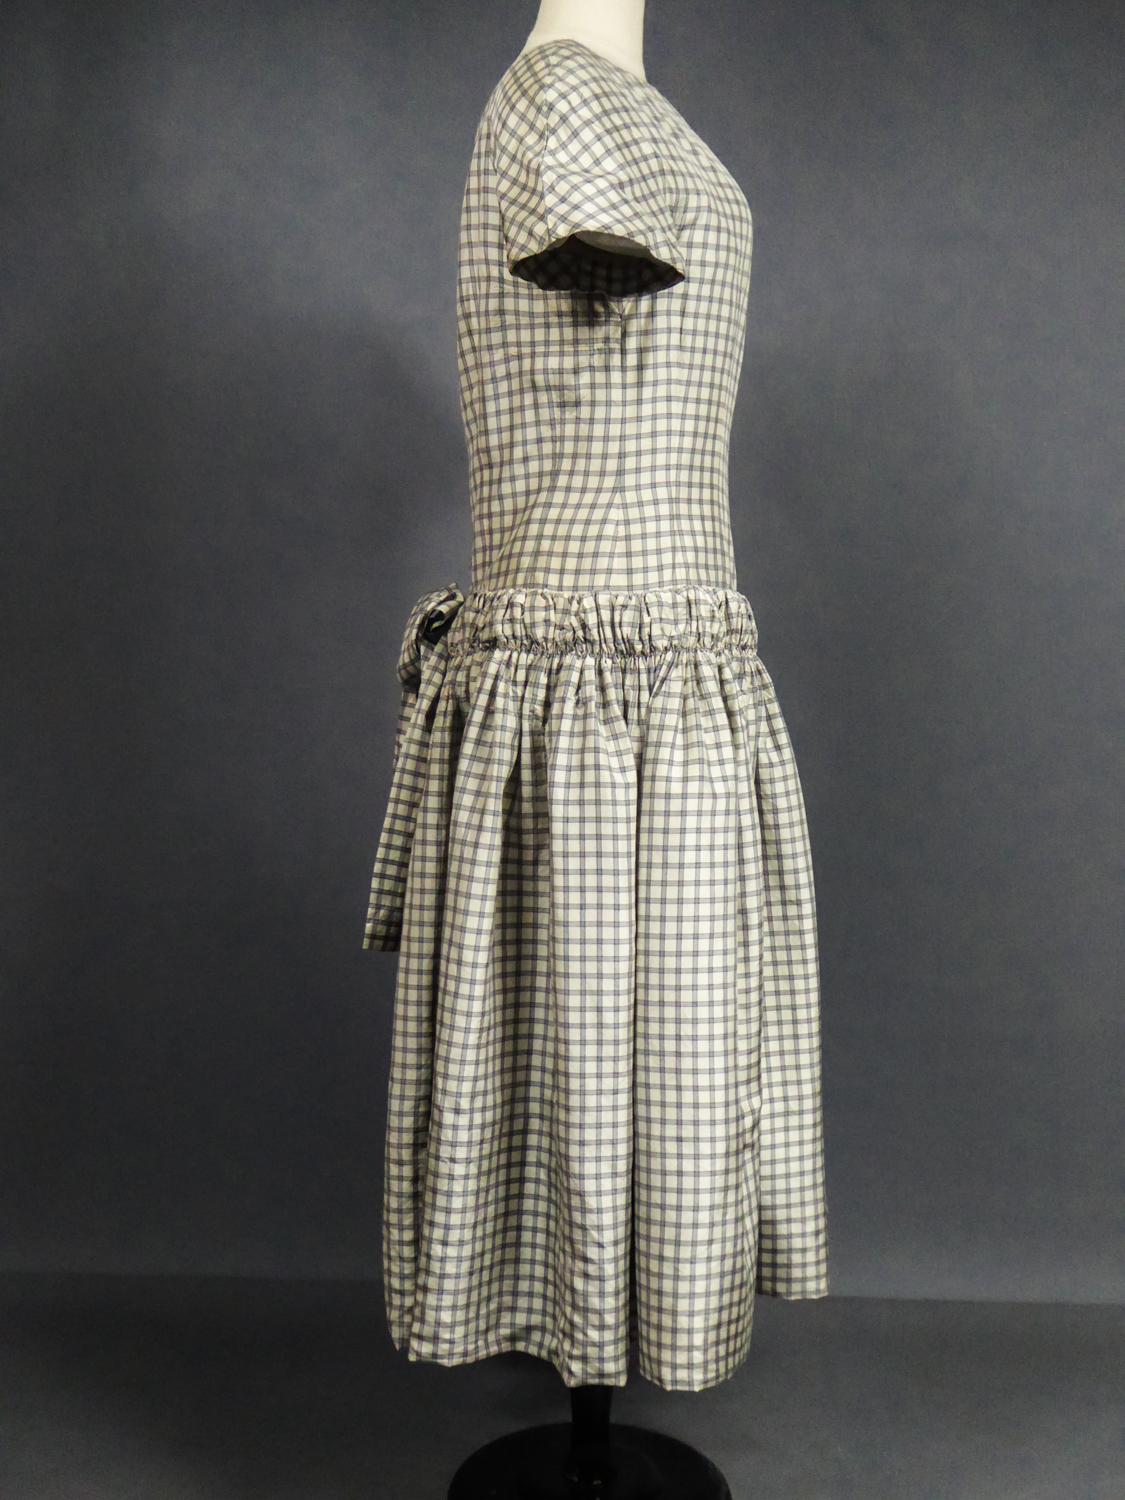 A Cristobal Balenciaga Couture Sac Dress in Plaid Taffeta n°55418 Circa 1958 3